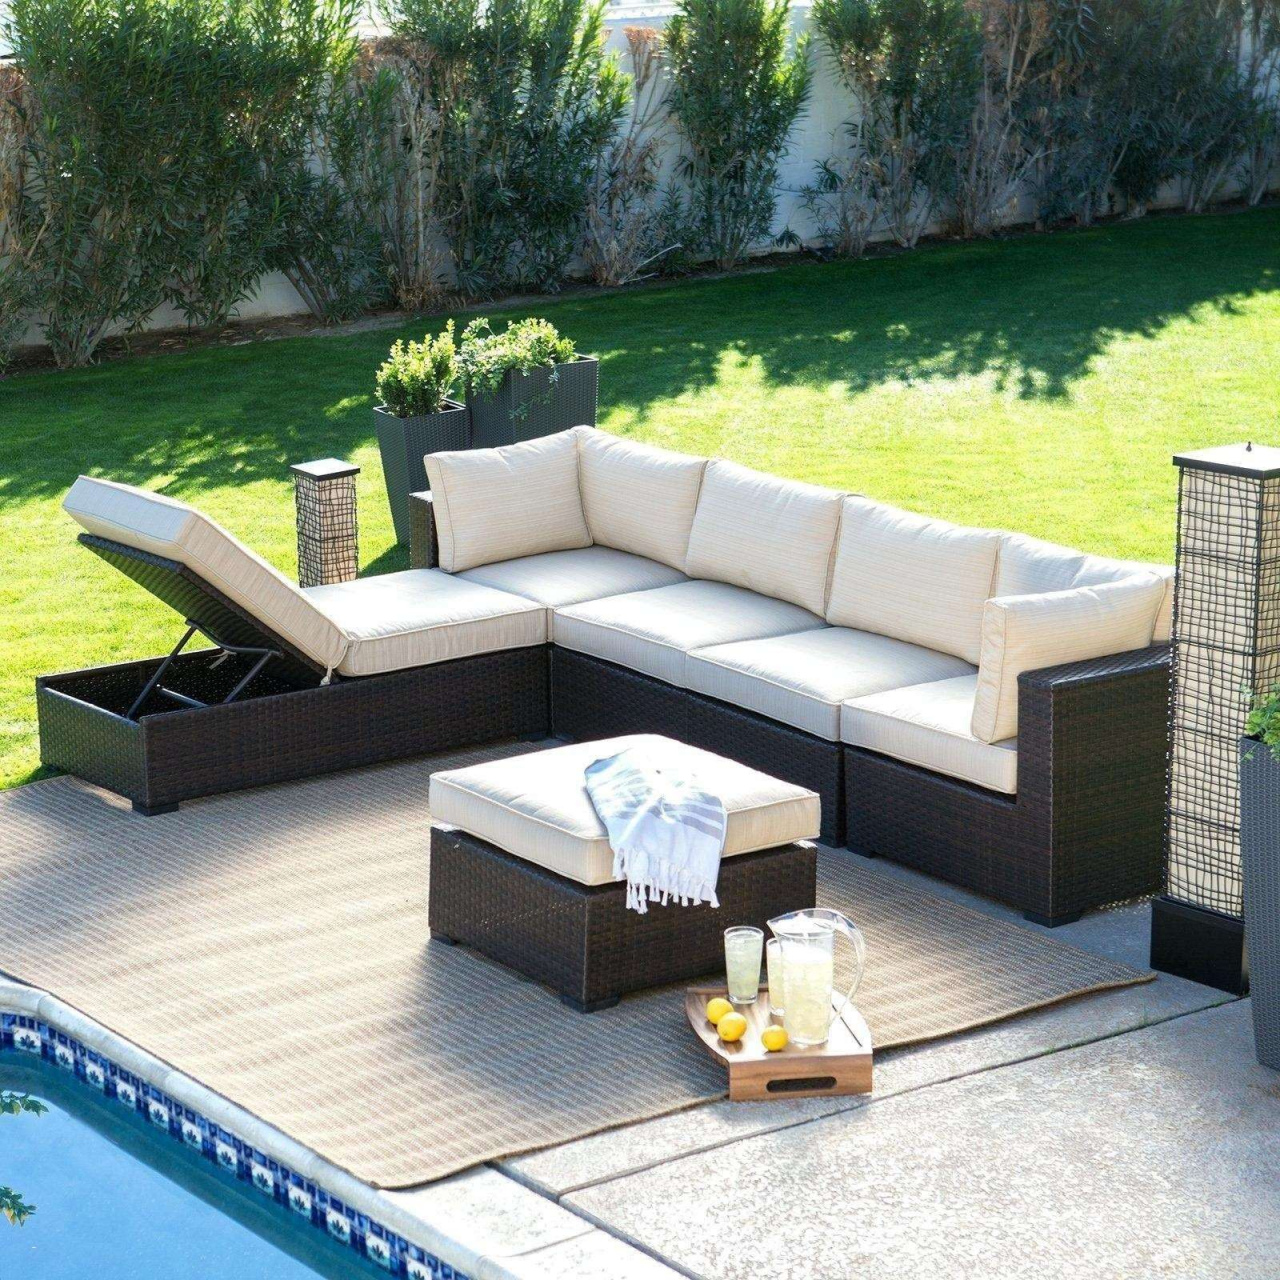 Garten Lounge sofa Best Of Cheap Patio Chairs Garten Sale Neu Lounge Outdoor